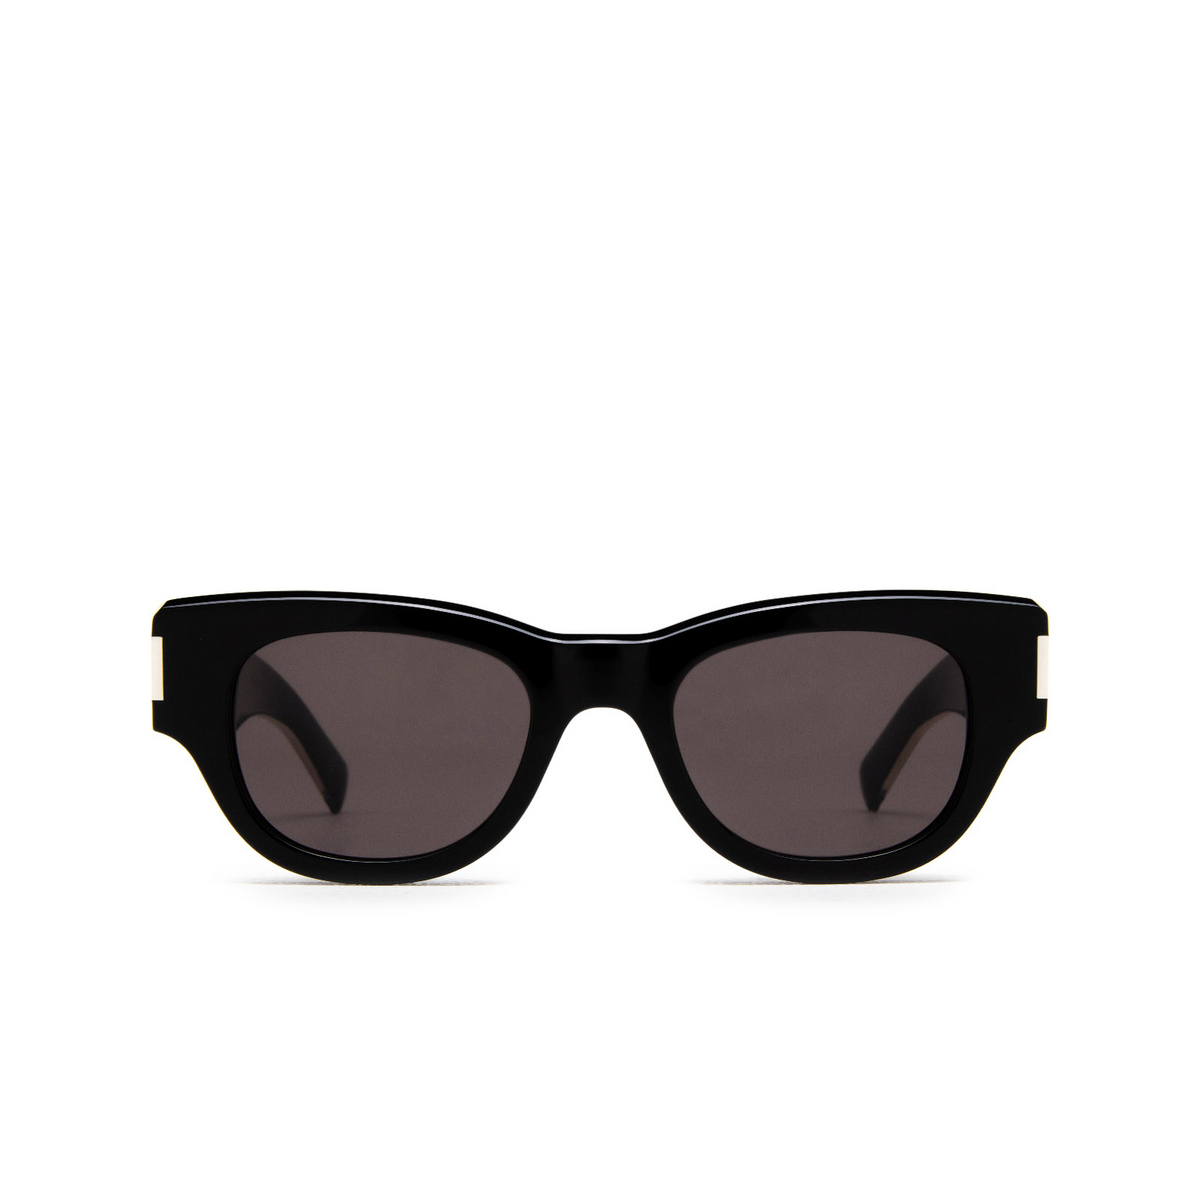 Saint Laurent SL 573 Sunglasses 001 Black - front view